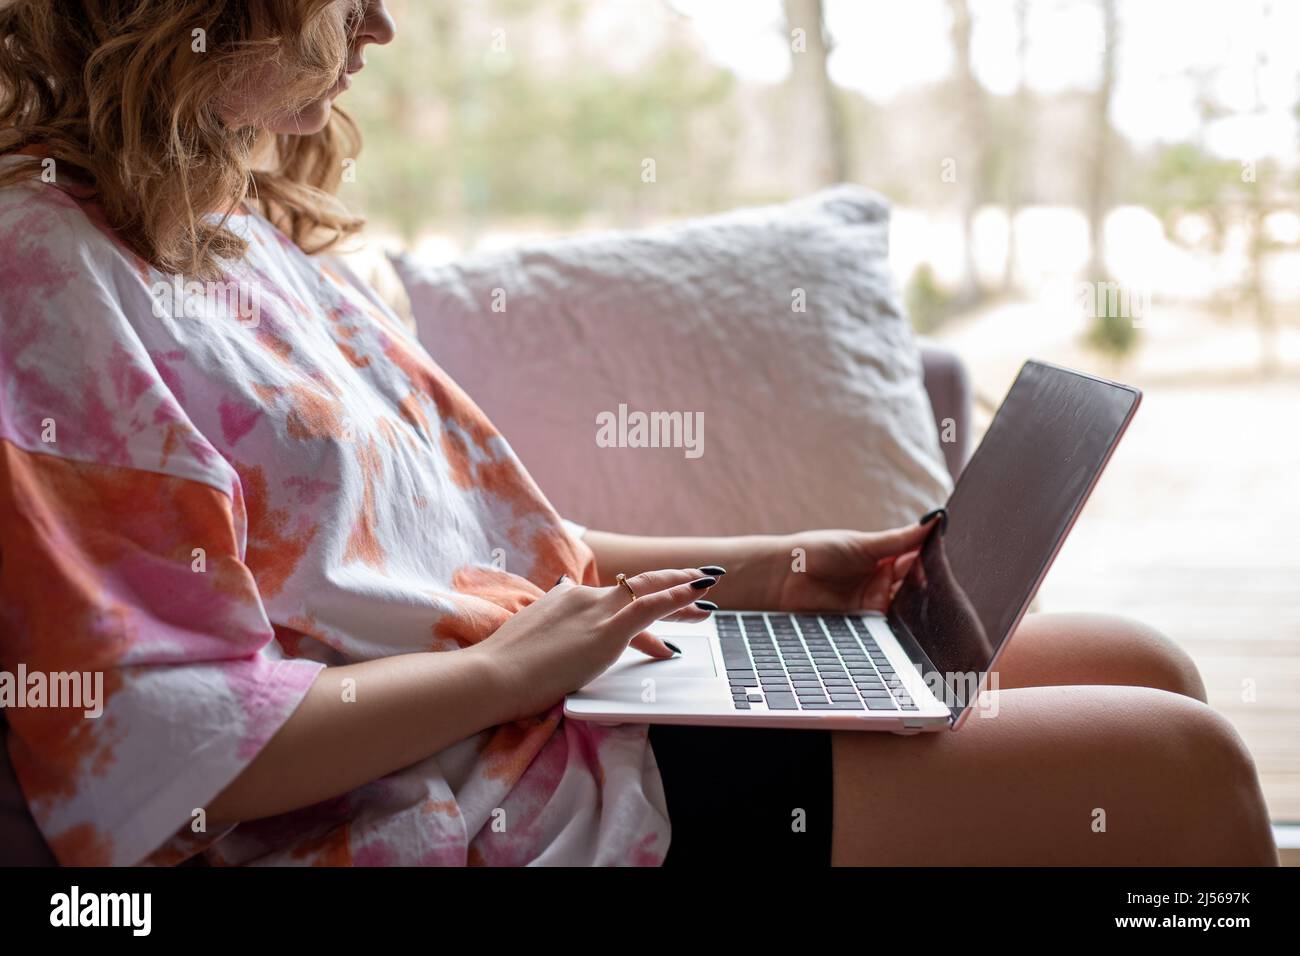 Nahaufnahme einer jungen Frau, die auf einem modernen Laptop tippt und arbeitet und auf einem weichen Sofa in legerer Kleidung in der Nähe eines großen Panoramafensters sitzt. Wohnzimmer Stockfoto